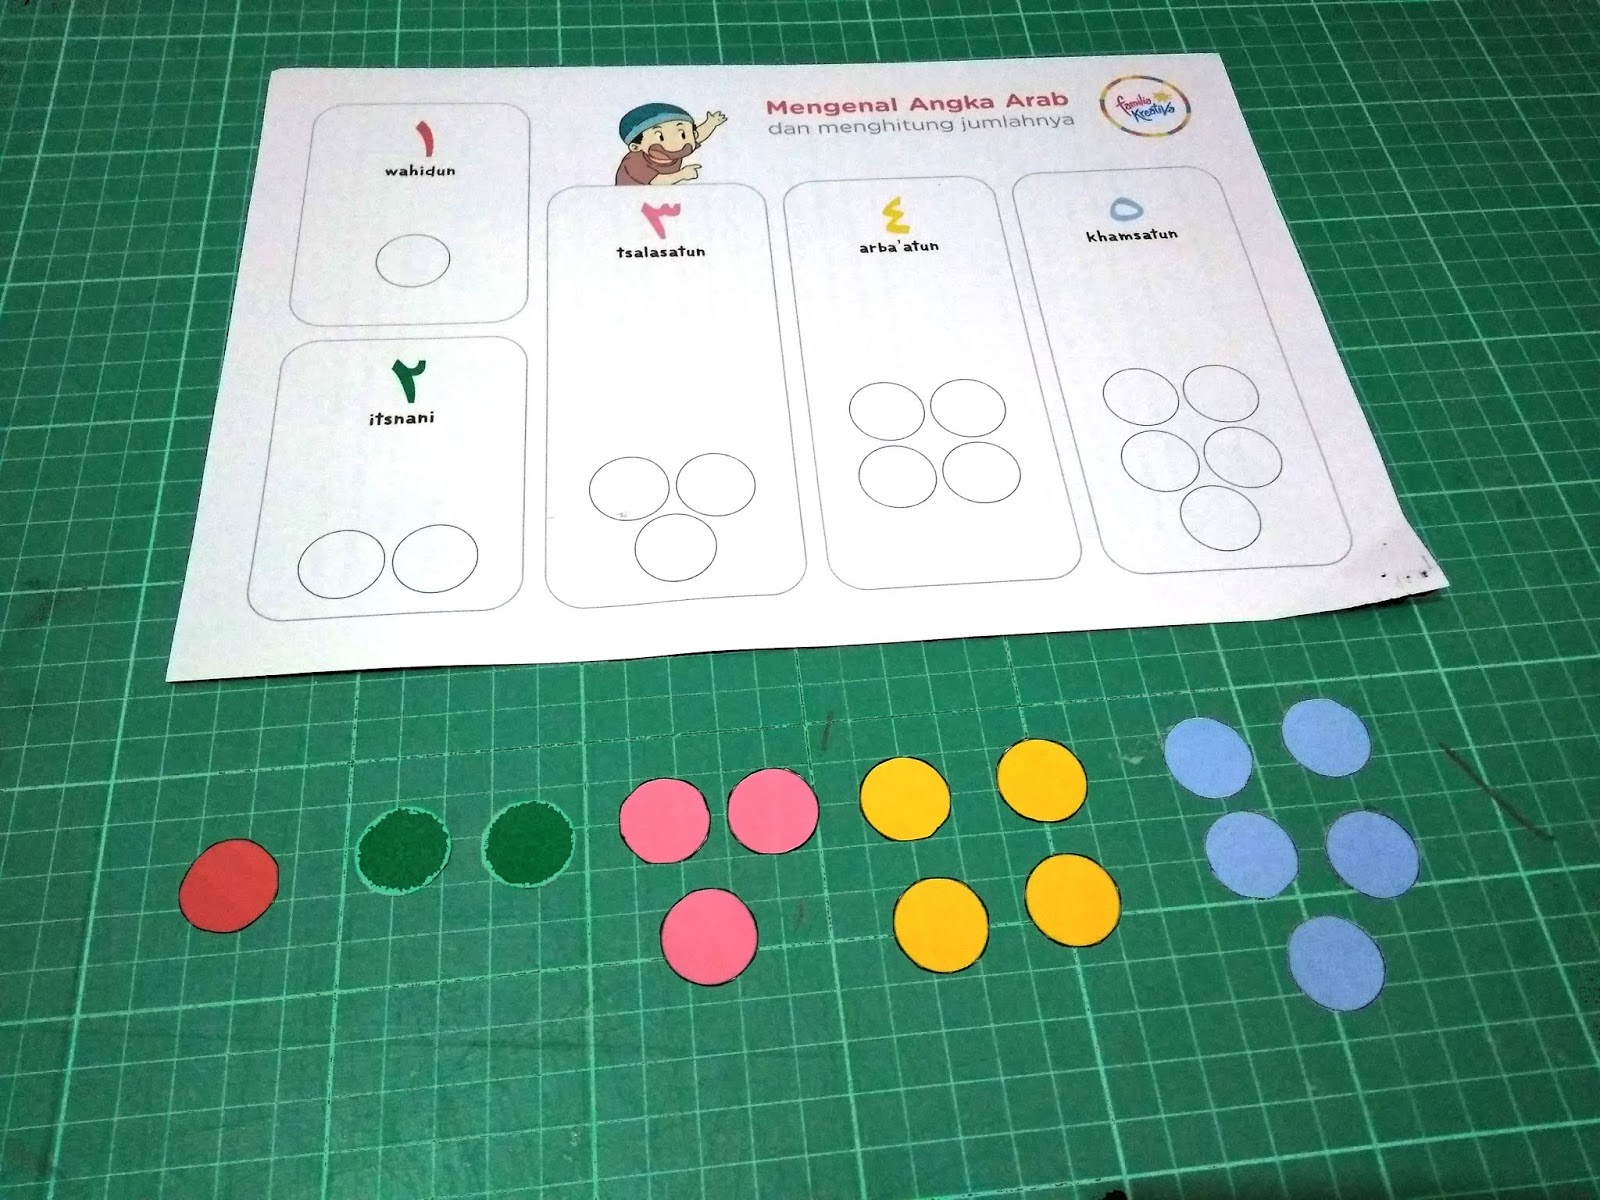 Siapkan lembar pertama dan kedua untuk ditempelkan lingkaran lingkaran warna